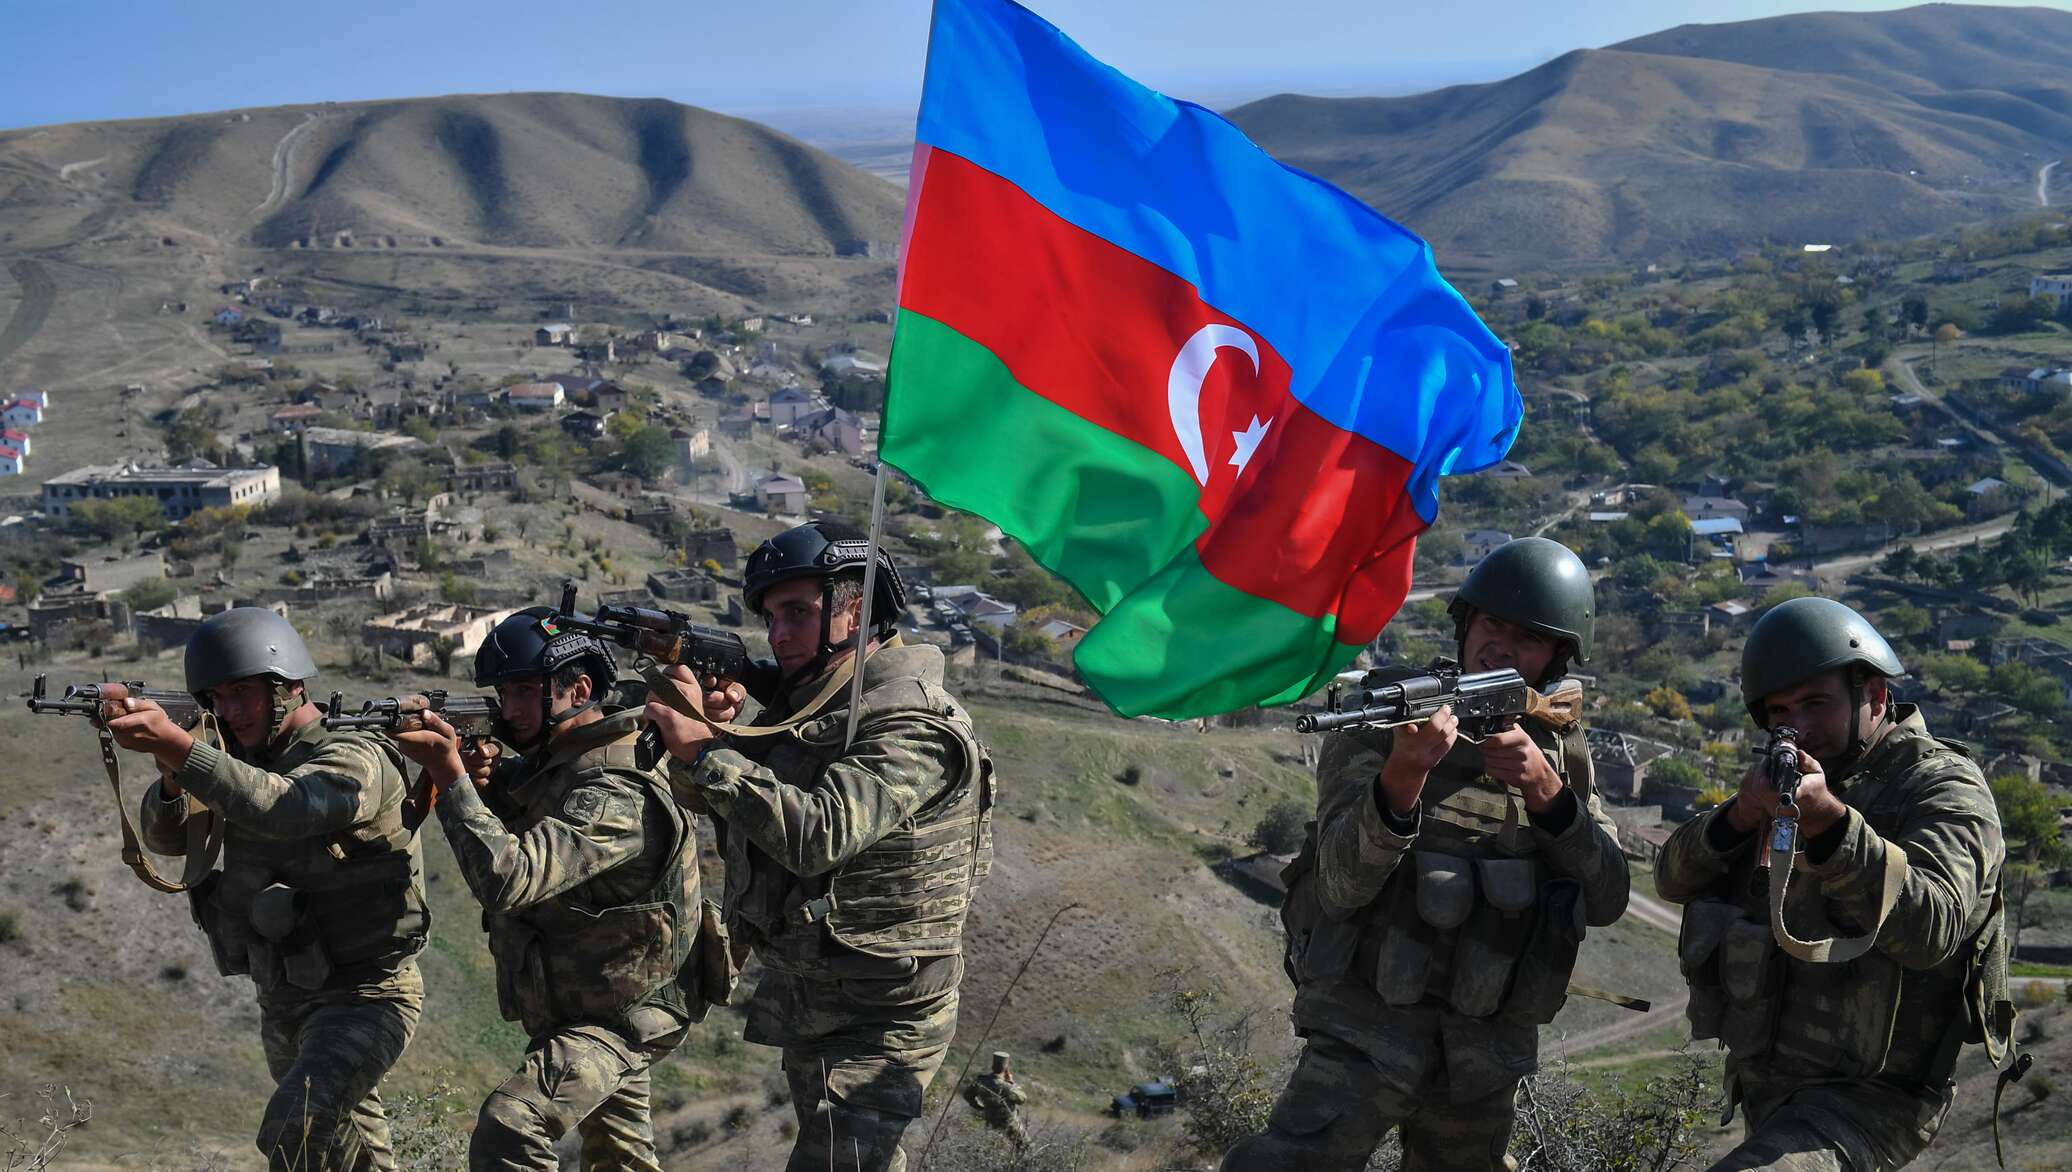 Азербайджан захватил